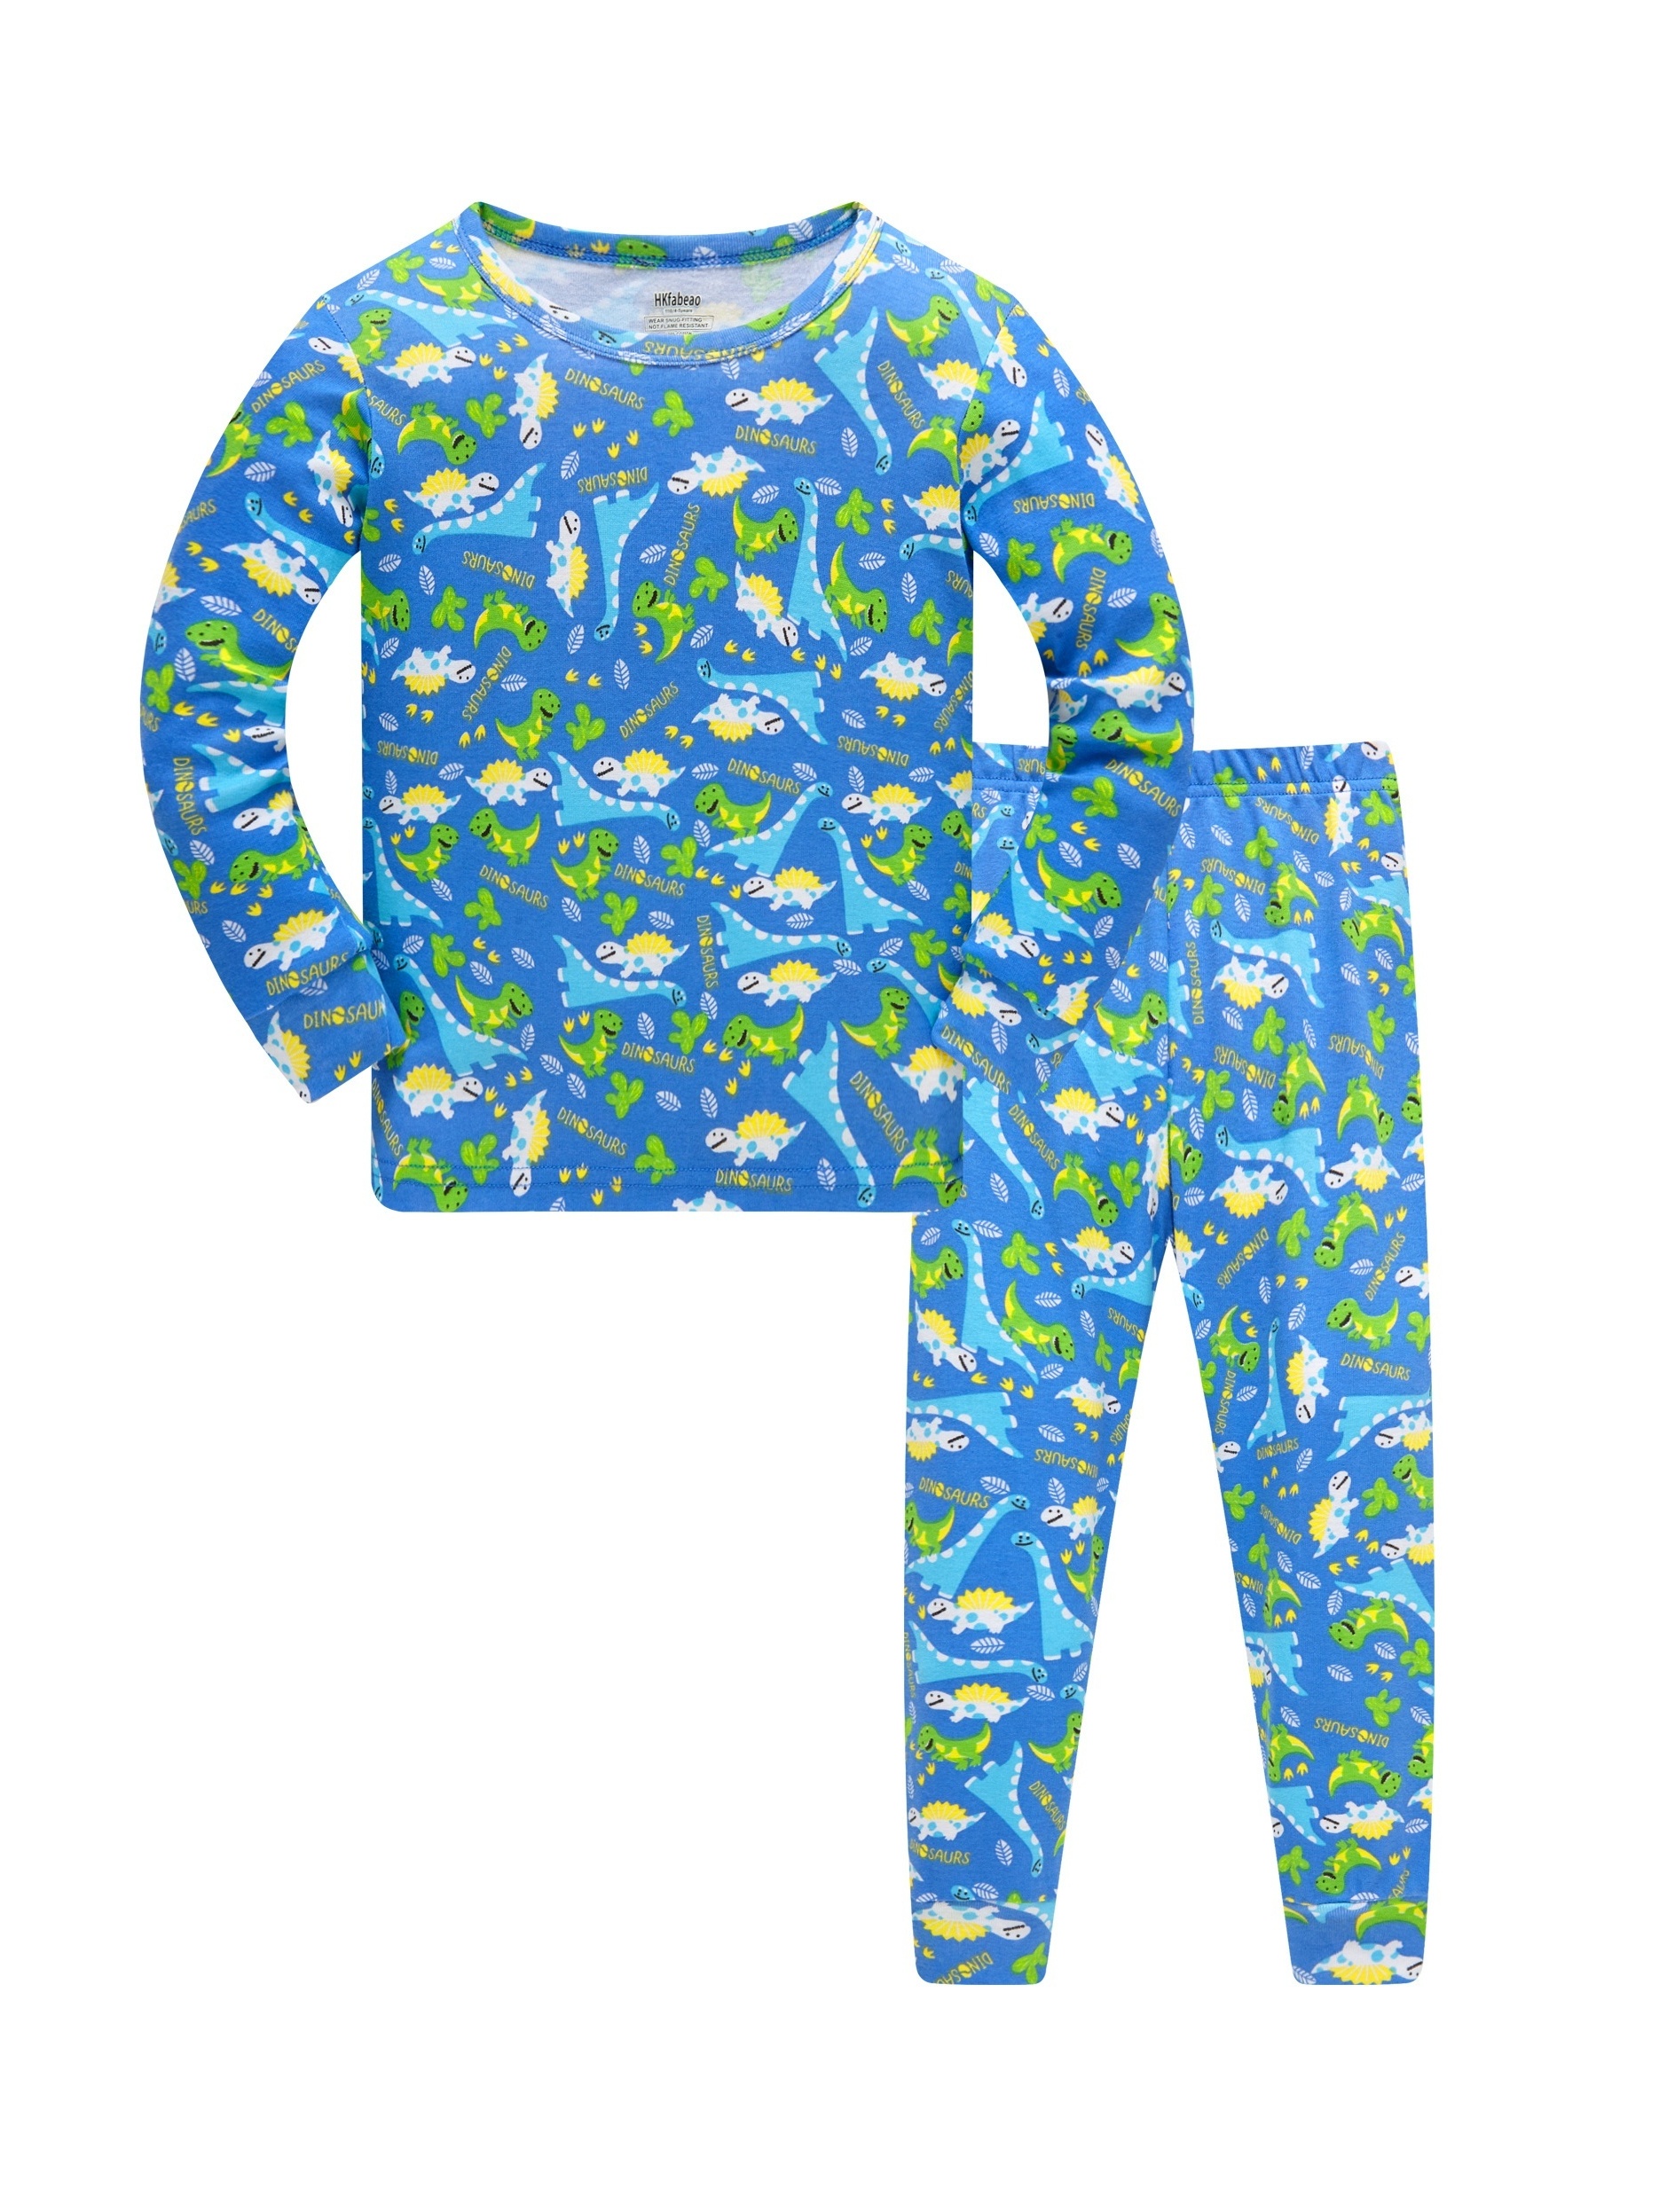 Pijama Niño 10 Años